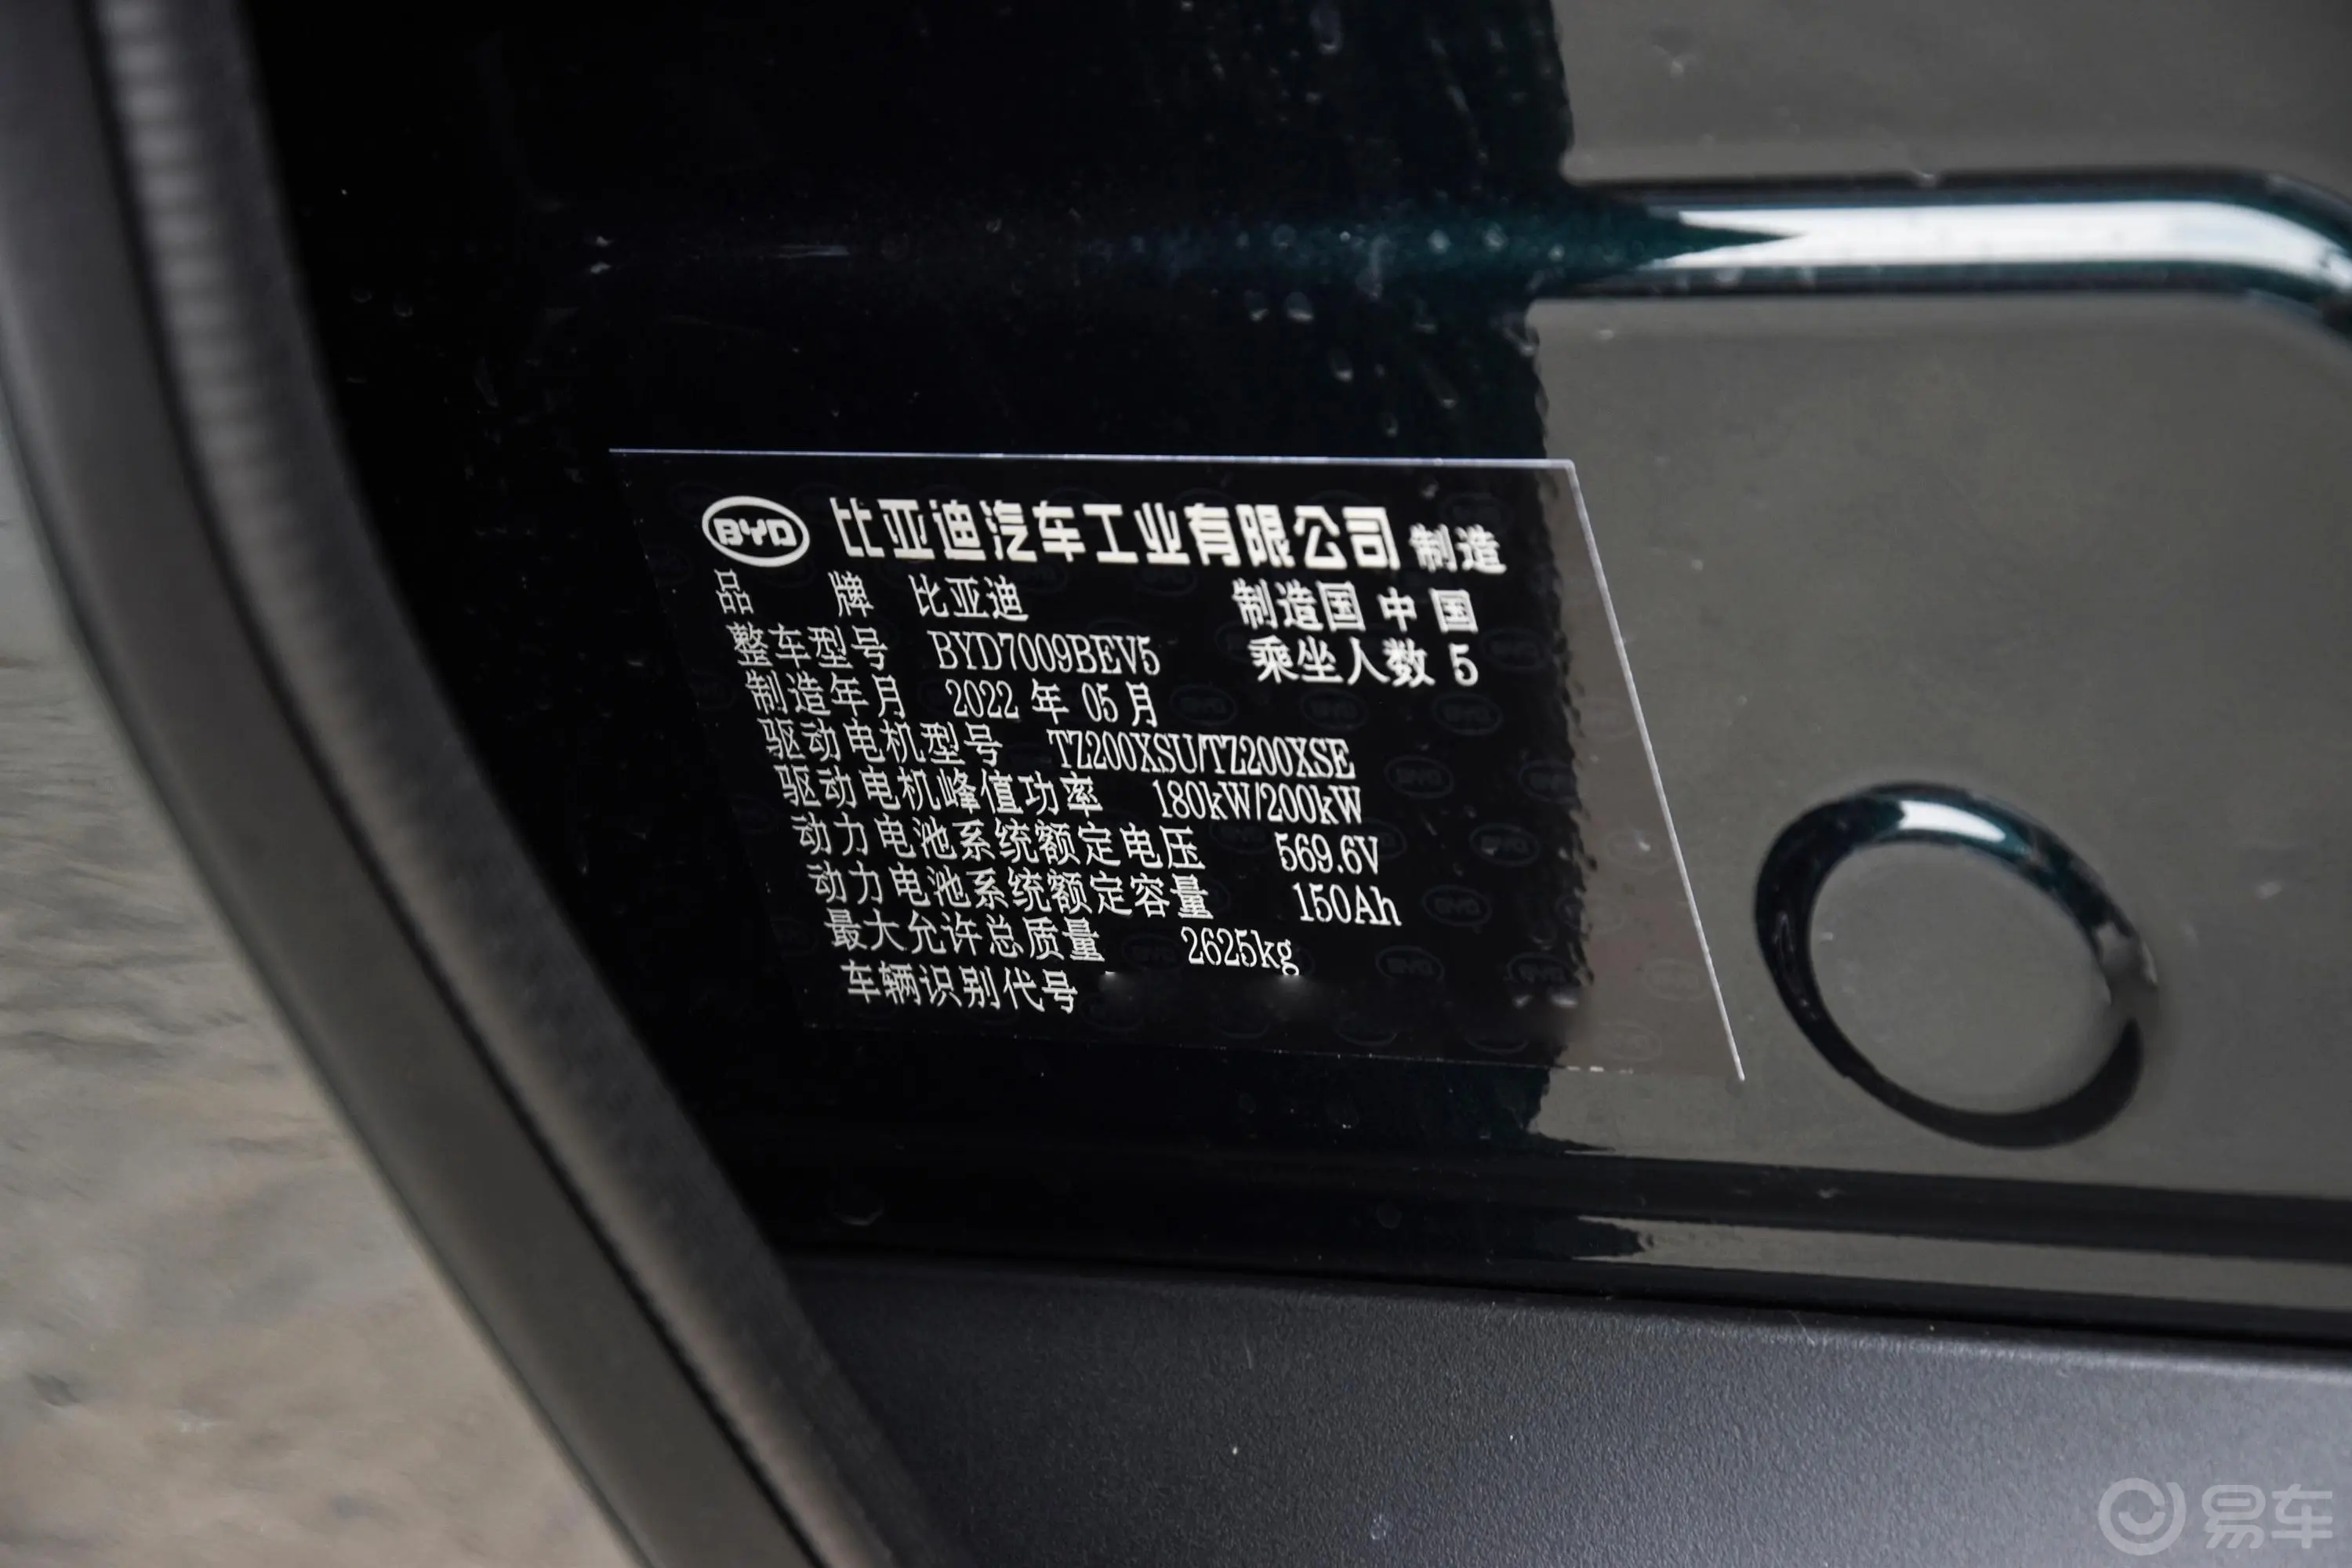 汉EV 610km 四驱千山翠限量版车辆信息铭牌